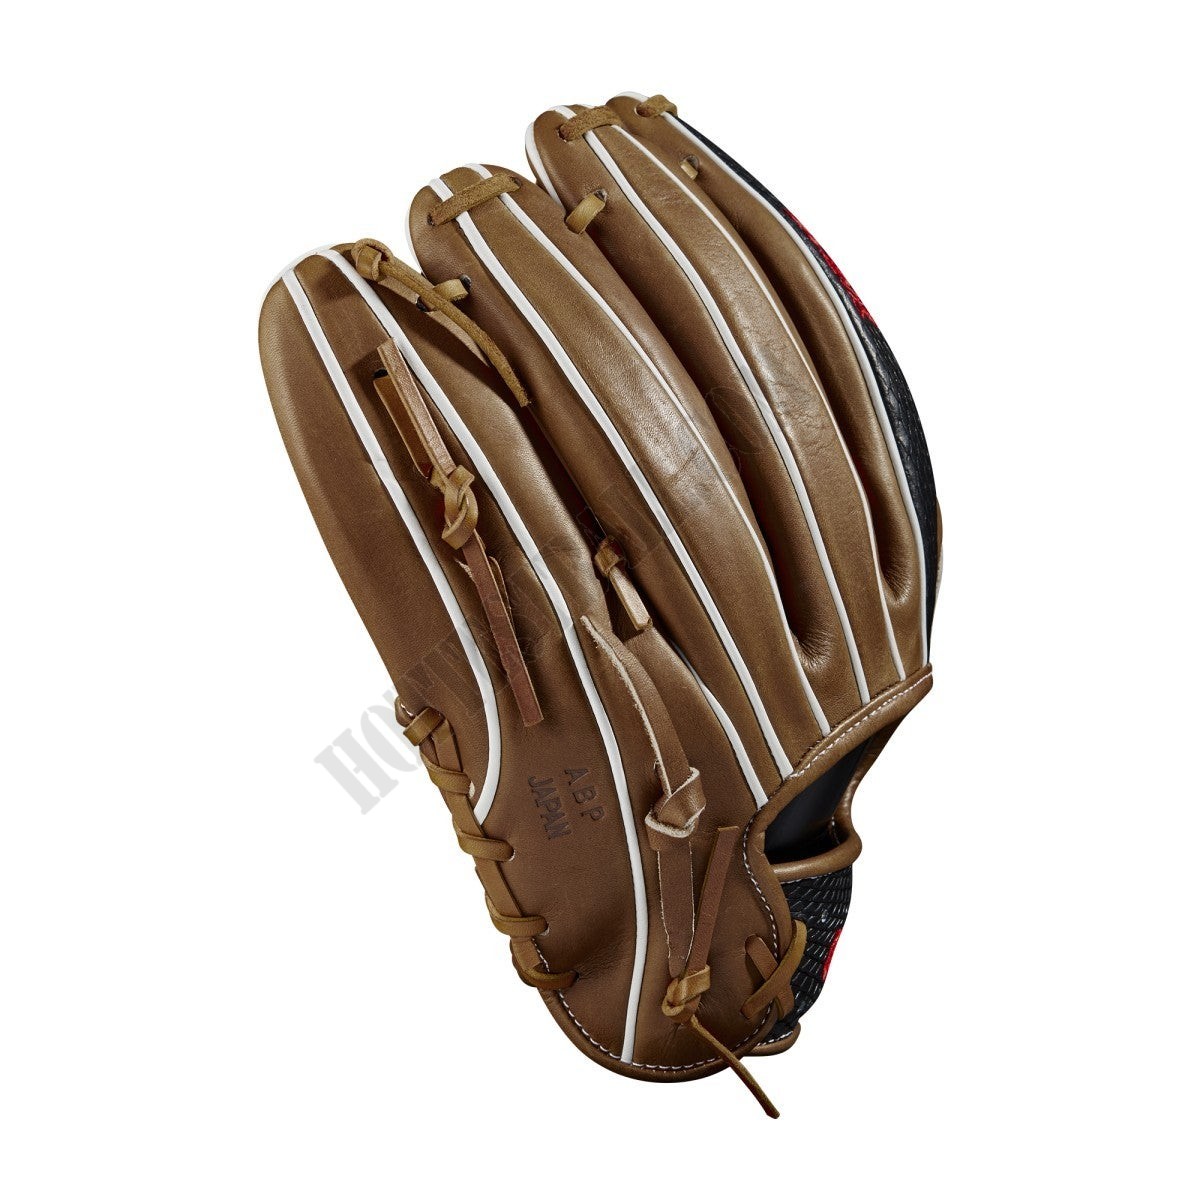 2021 A2K 1787 11.75" Infield Baseball Glove ● Wilson Promotions - -4